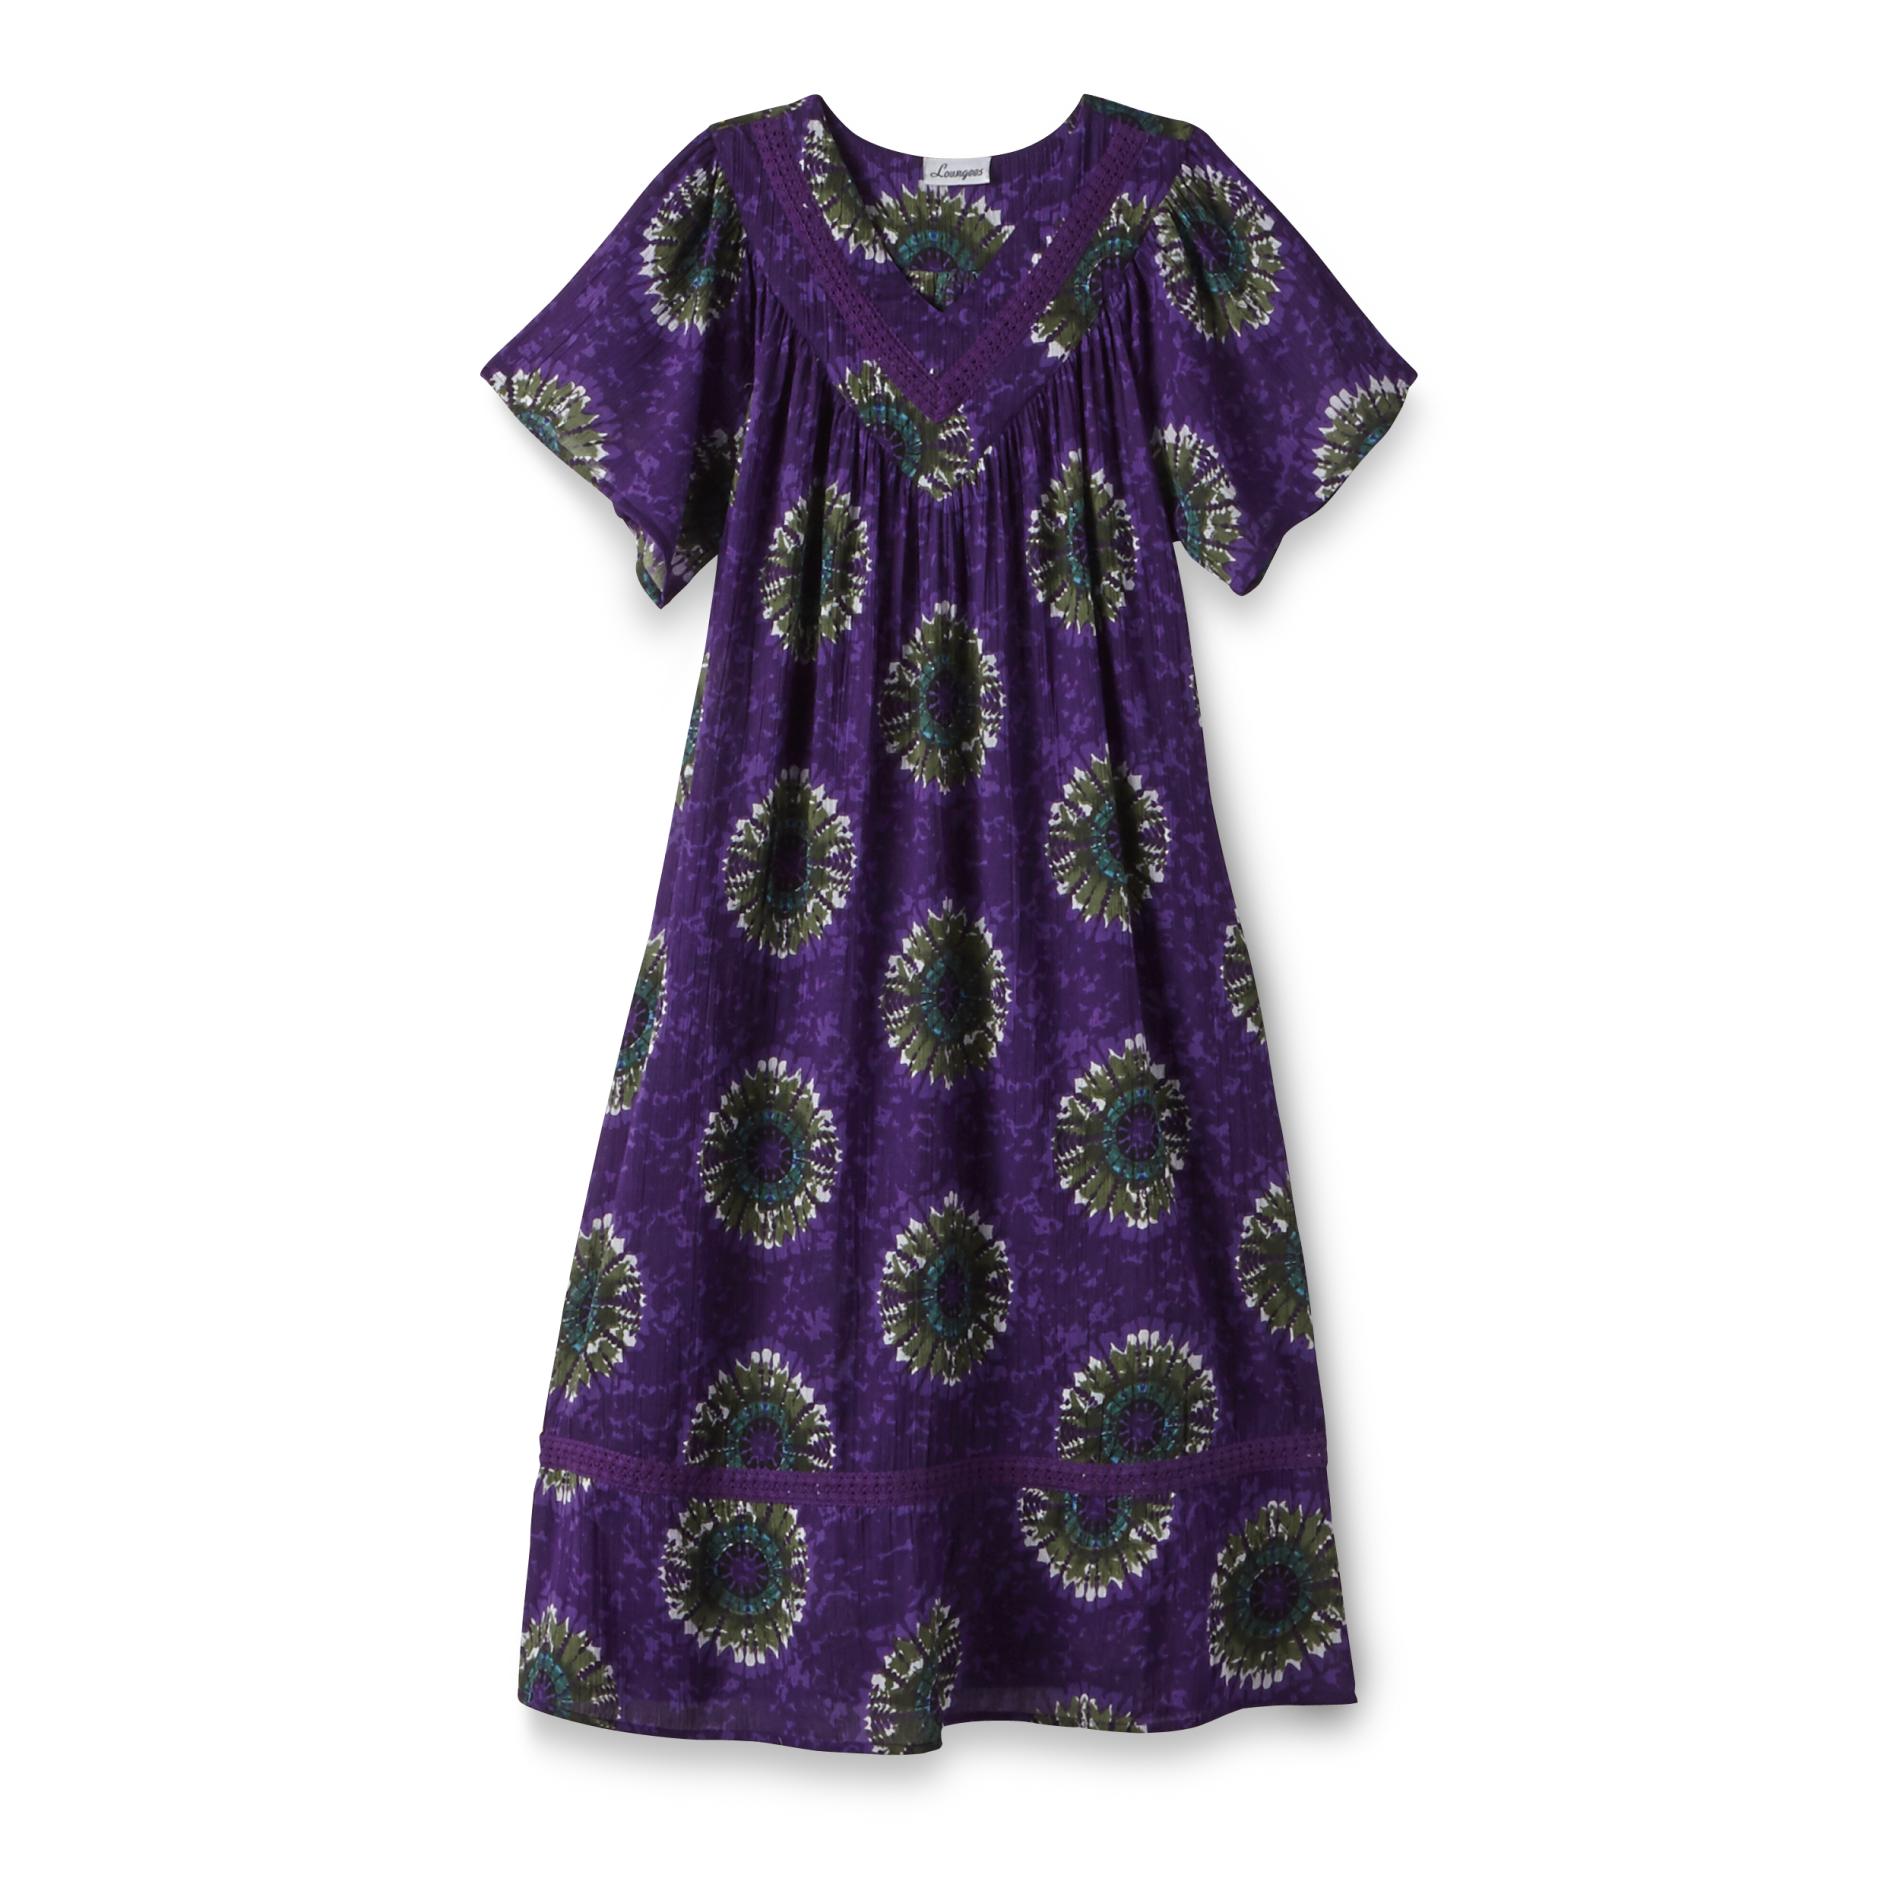 Loungees Women's Caftan Nightgown - Tie-Dye